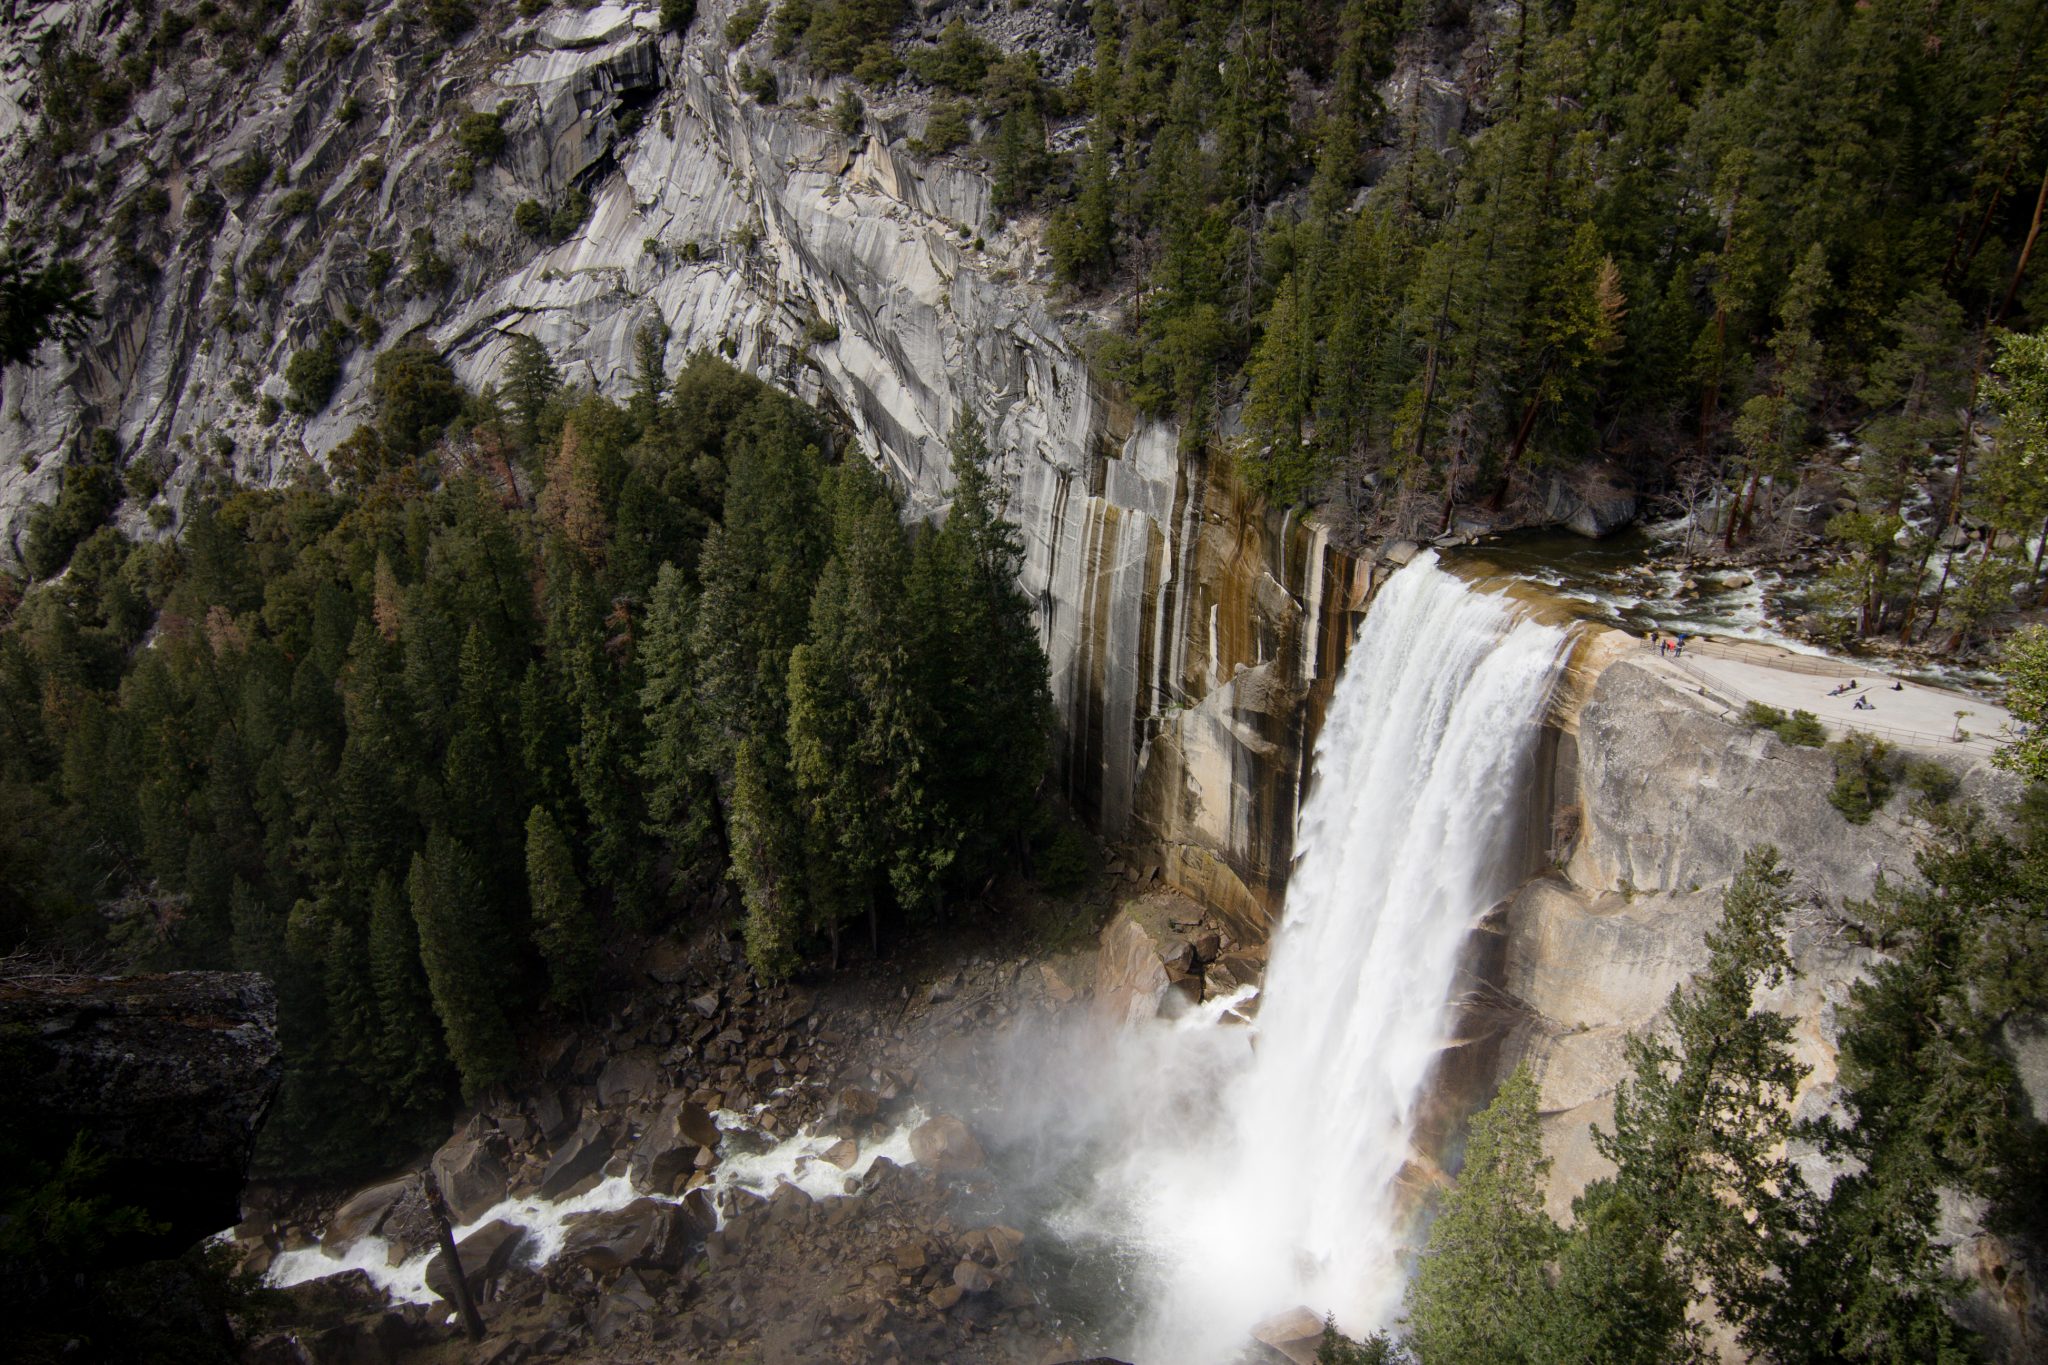 Vernal Falls, Yosemite